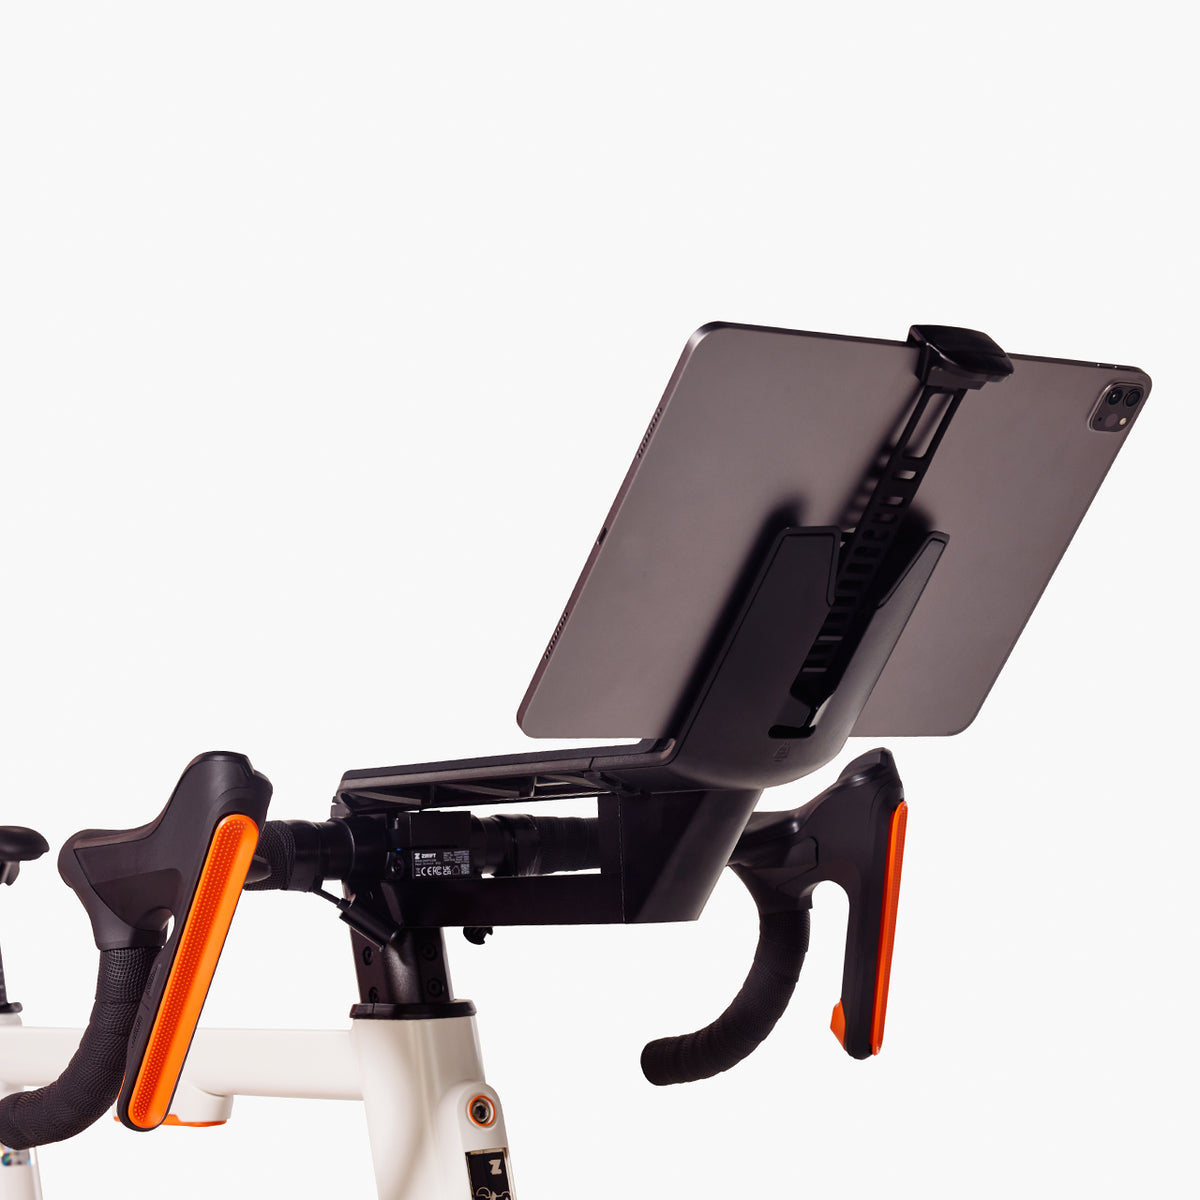 Zwift Ride Tablet Holder Adjustable Mount Strap